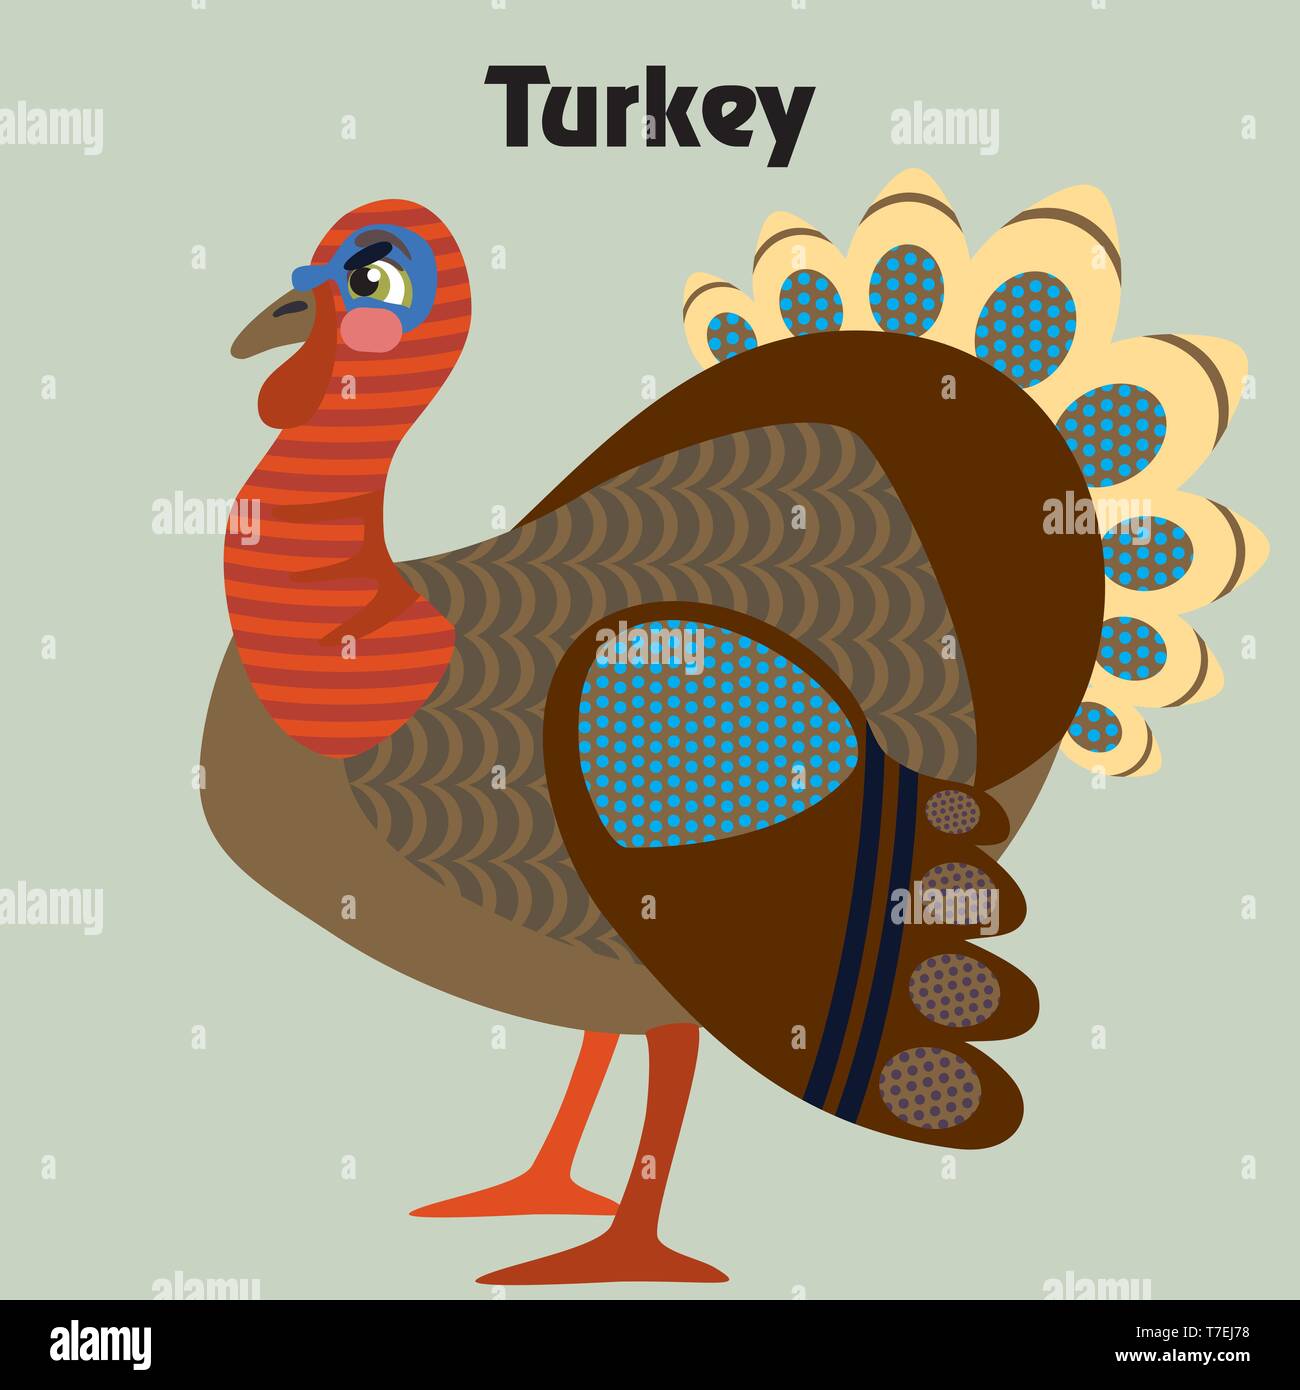 Bunt dekorativ Umrisse lustig bunte Türkei steht im Profil. Bauernhof Tiere und Vögel Vektor cartoon Flachbild Abbildung in verschiedenen Farben ist Stock Vektor